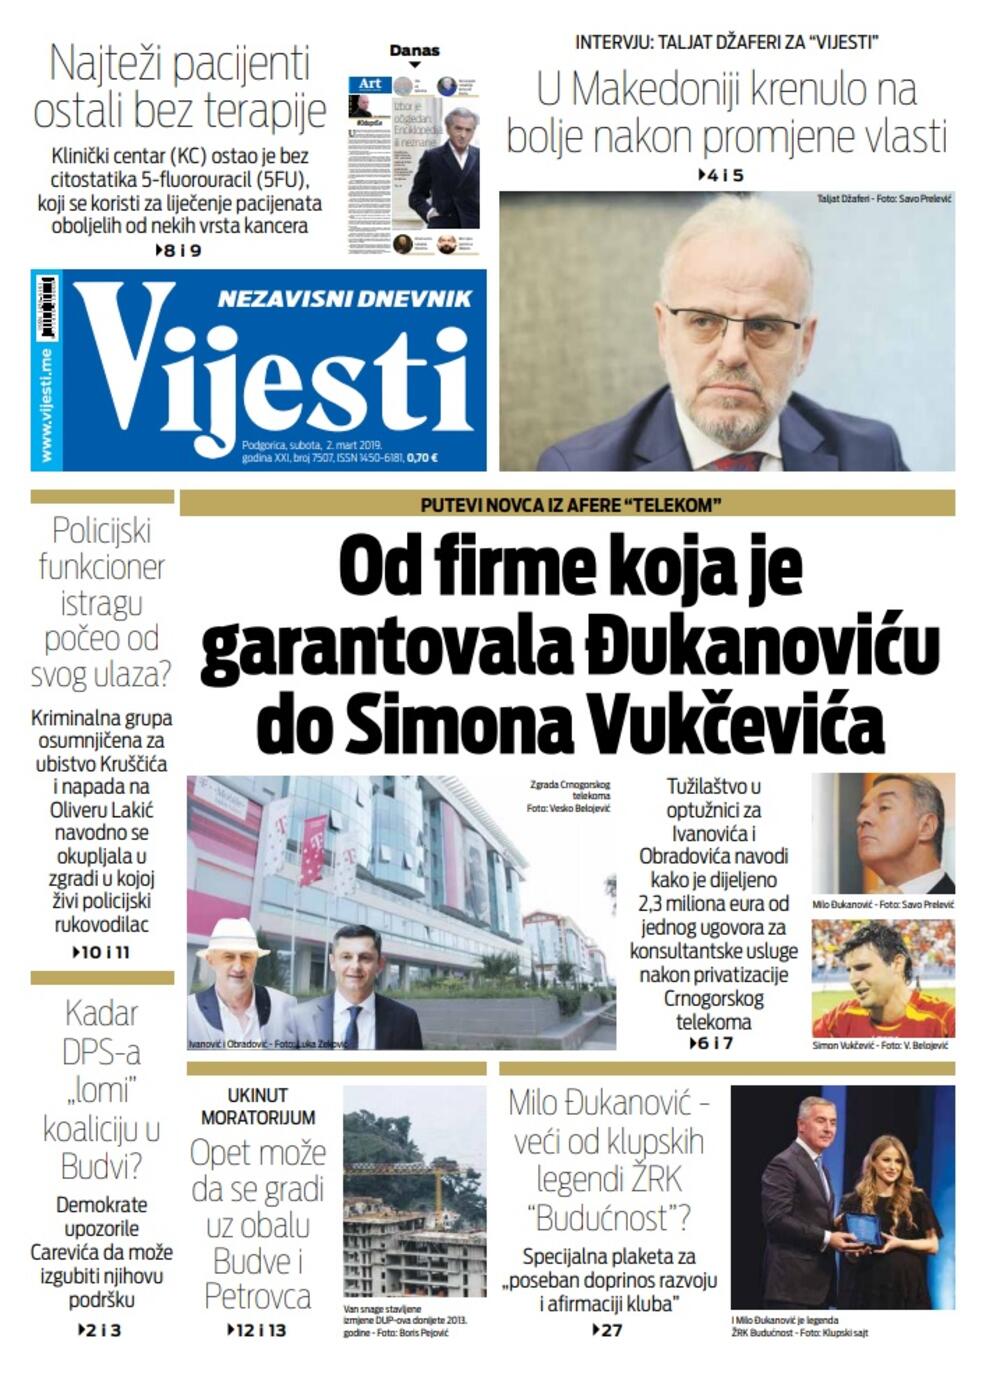 Naslovna strana "Vijesti" za 2. mart